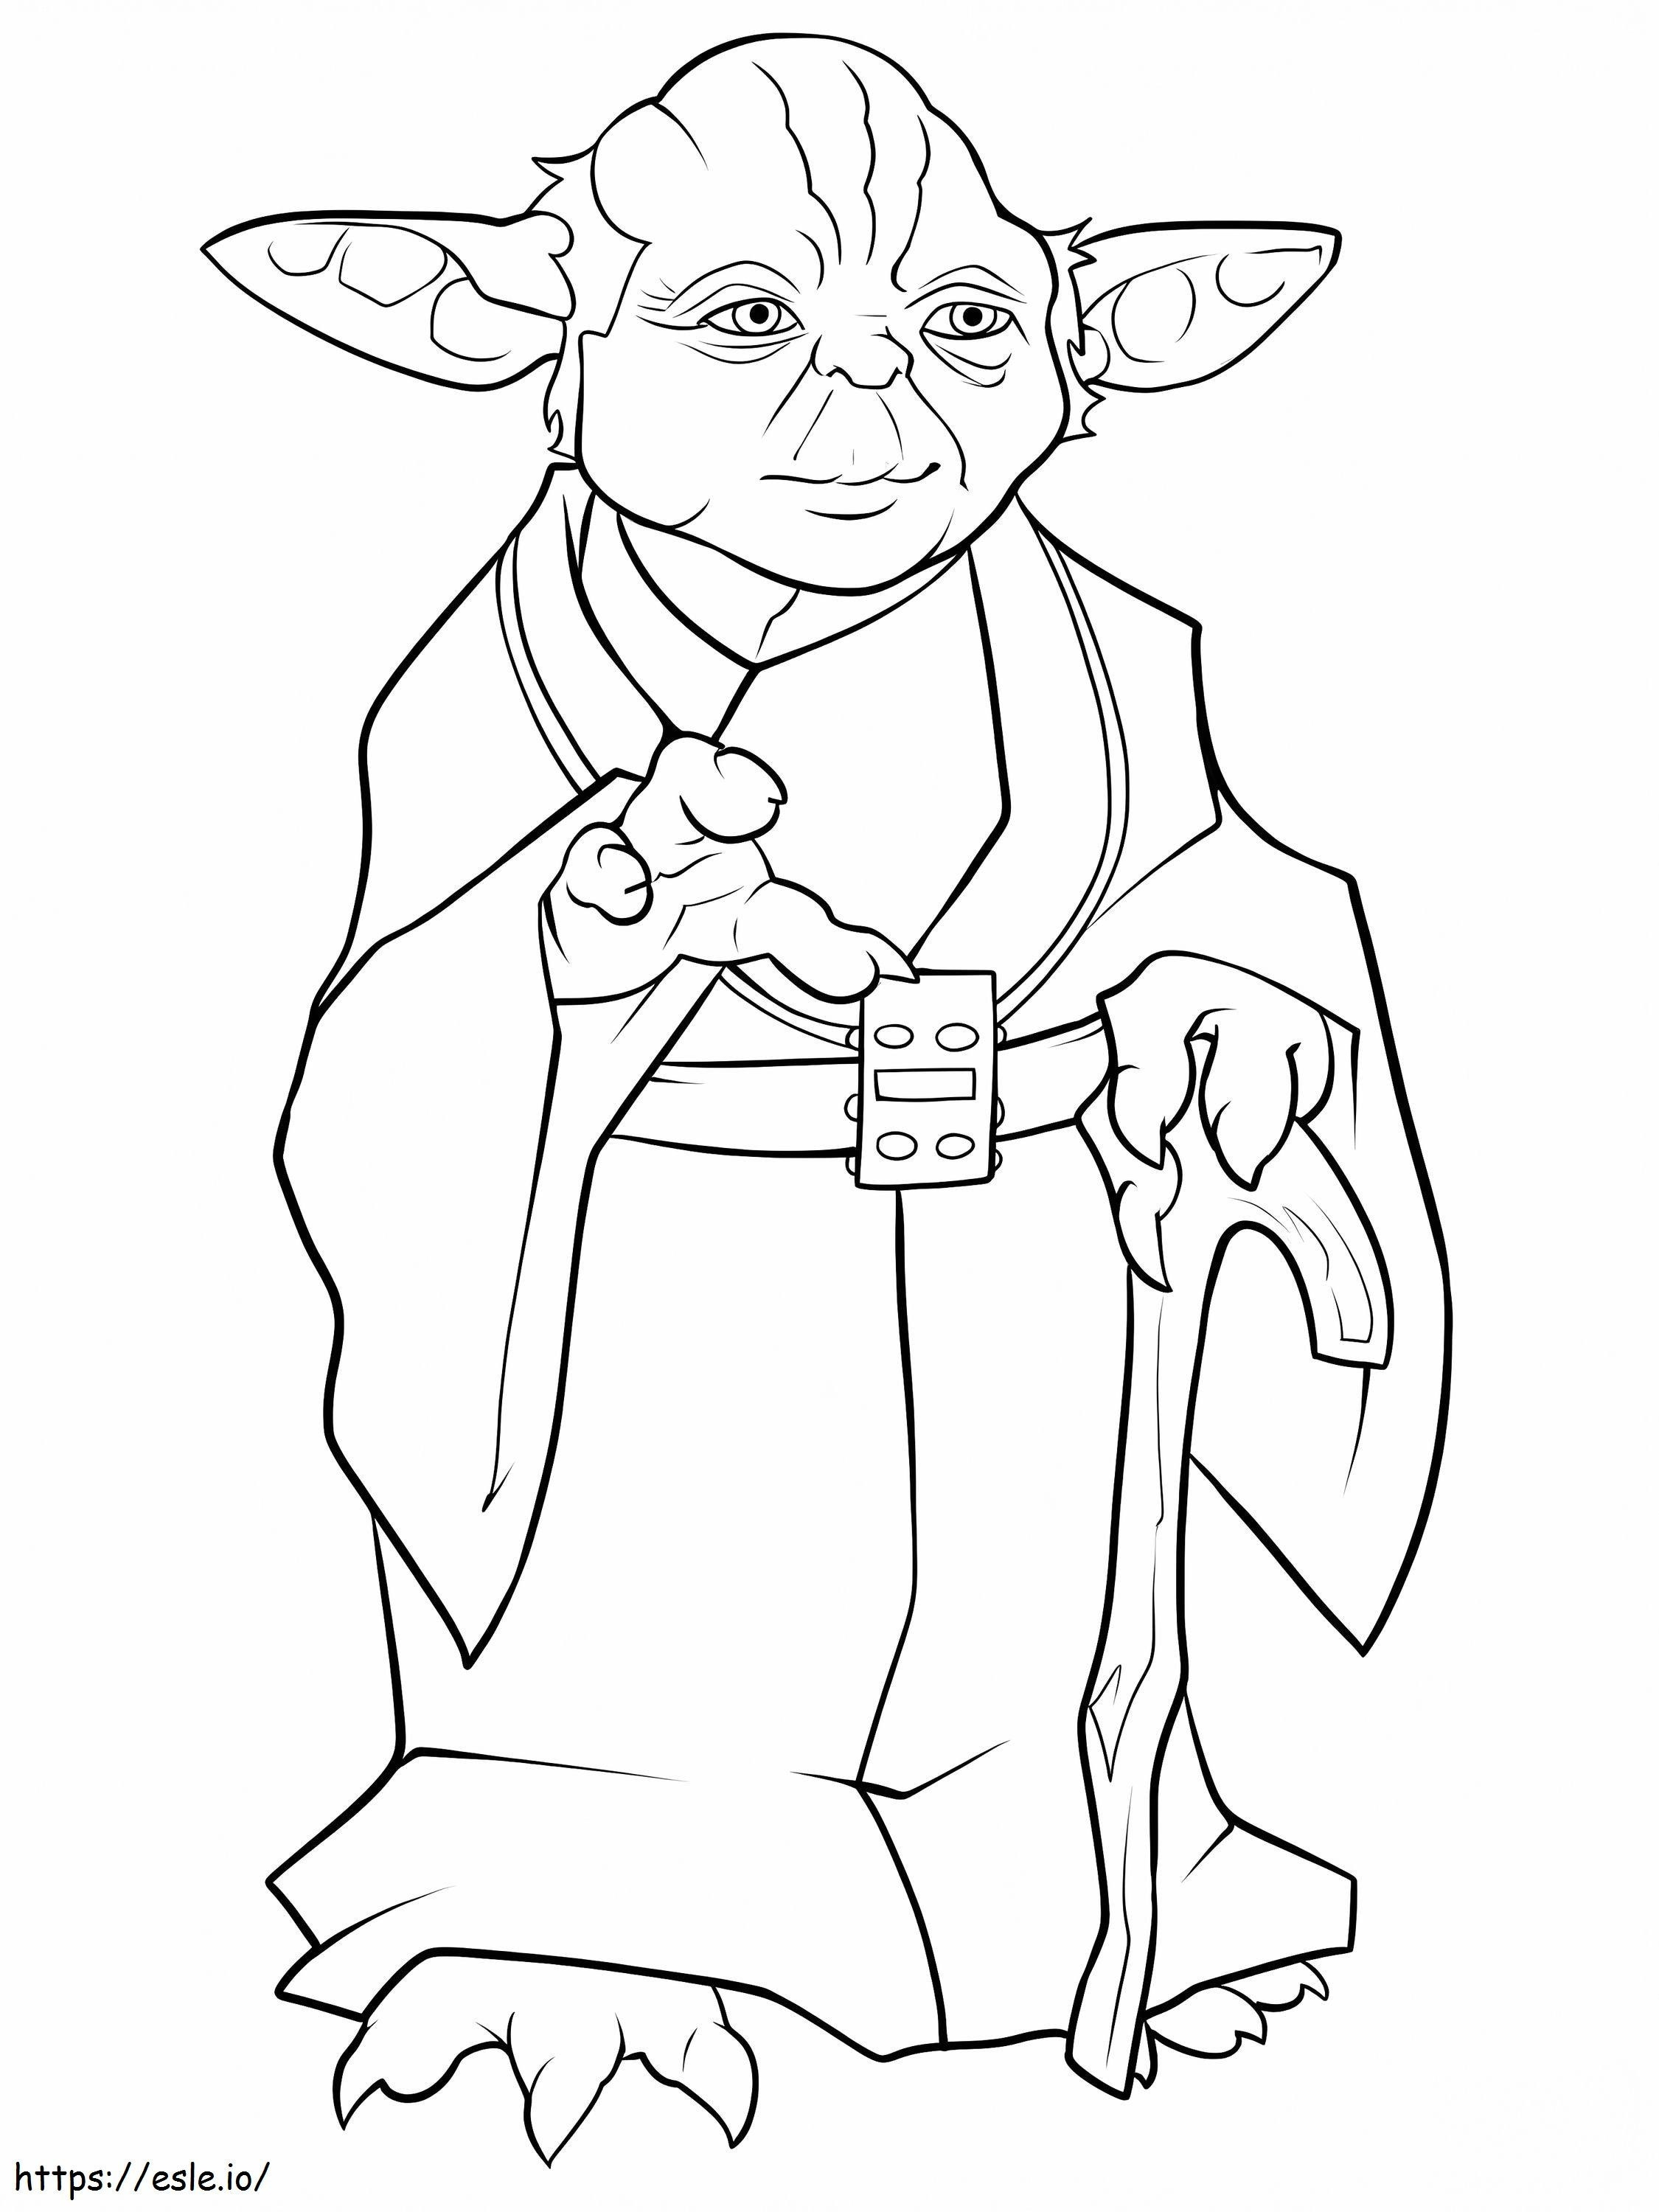 Yoda De Star Wars coloring page